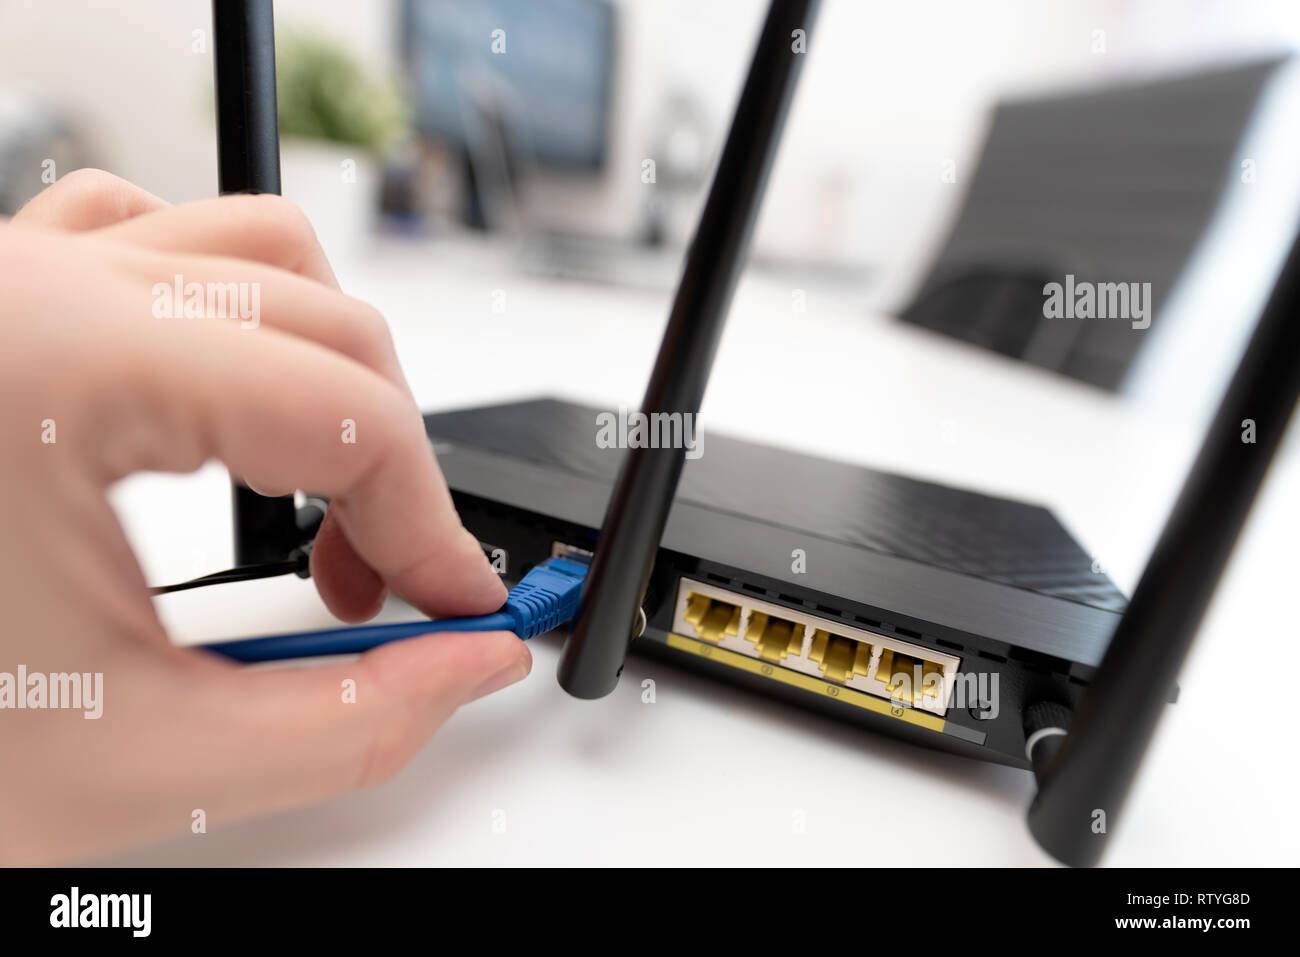 El hombre se conecta el cable de internet al router la toma. Concepto de internet inalámbrico y rápido Foto de stock